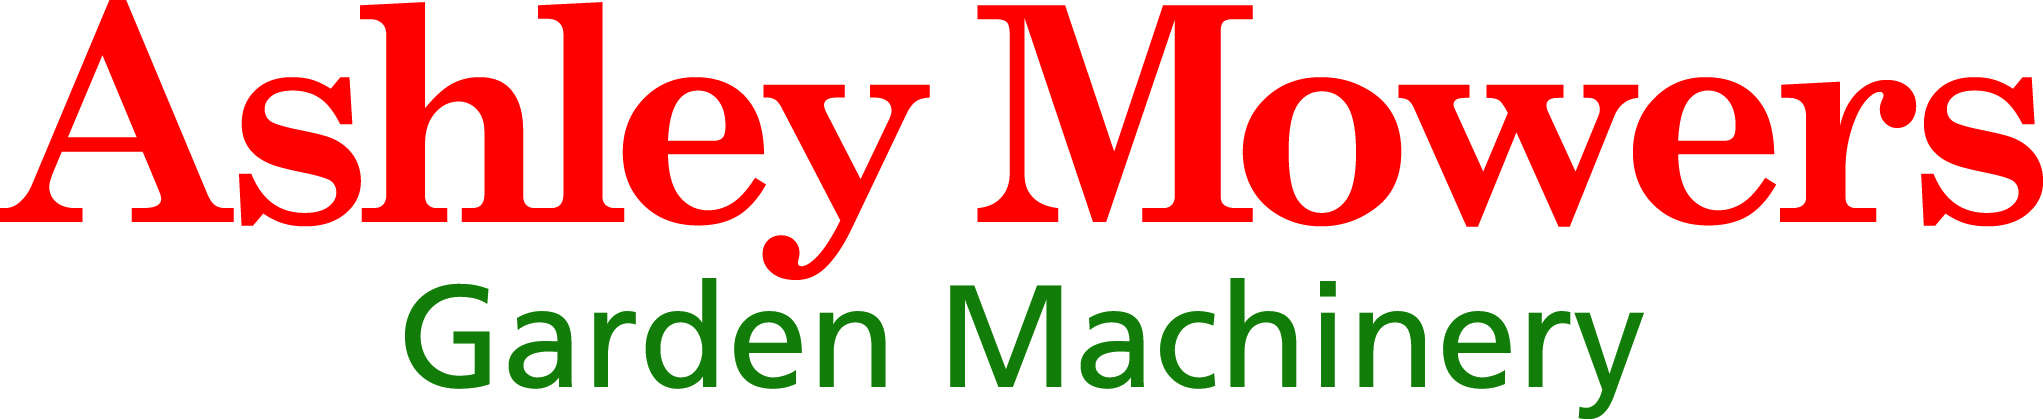 Ashley Mowers Logo